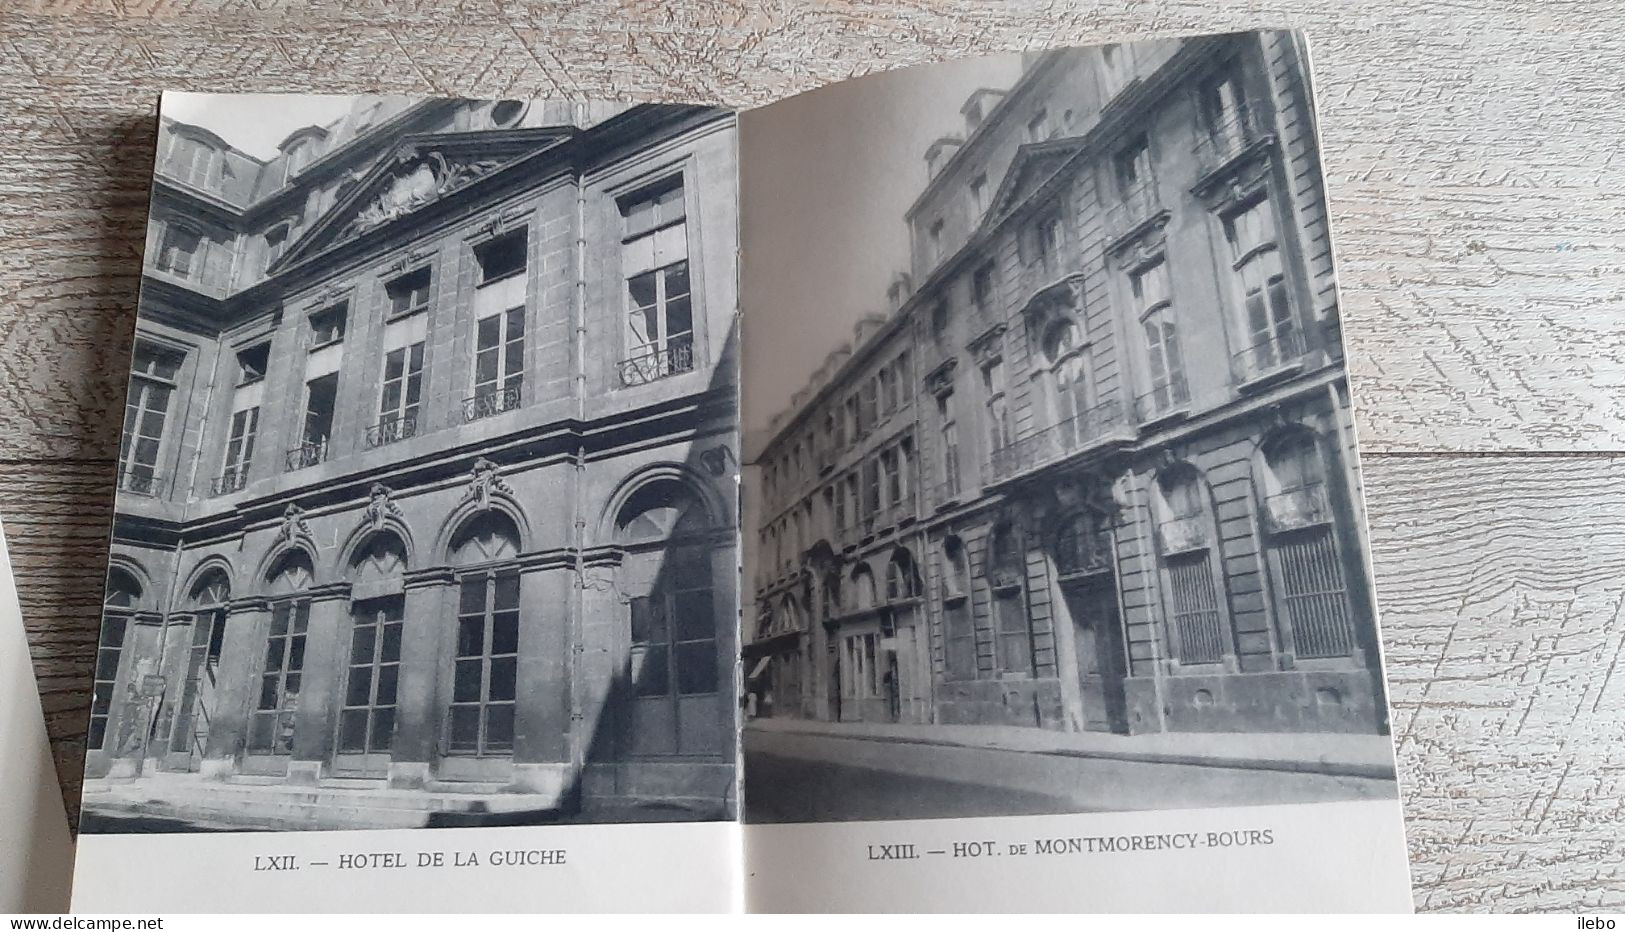 Les Hôtels De L'île Saint Louis De La Cité De L'université Et Du Luxembourg Pillement 1951 Plan - Paris